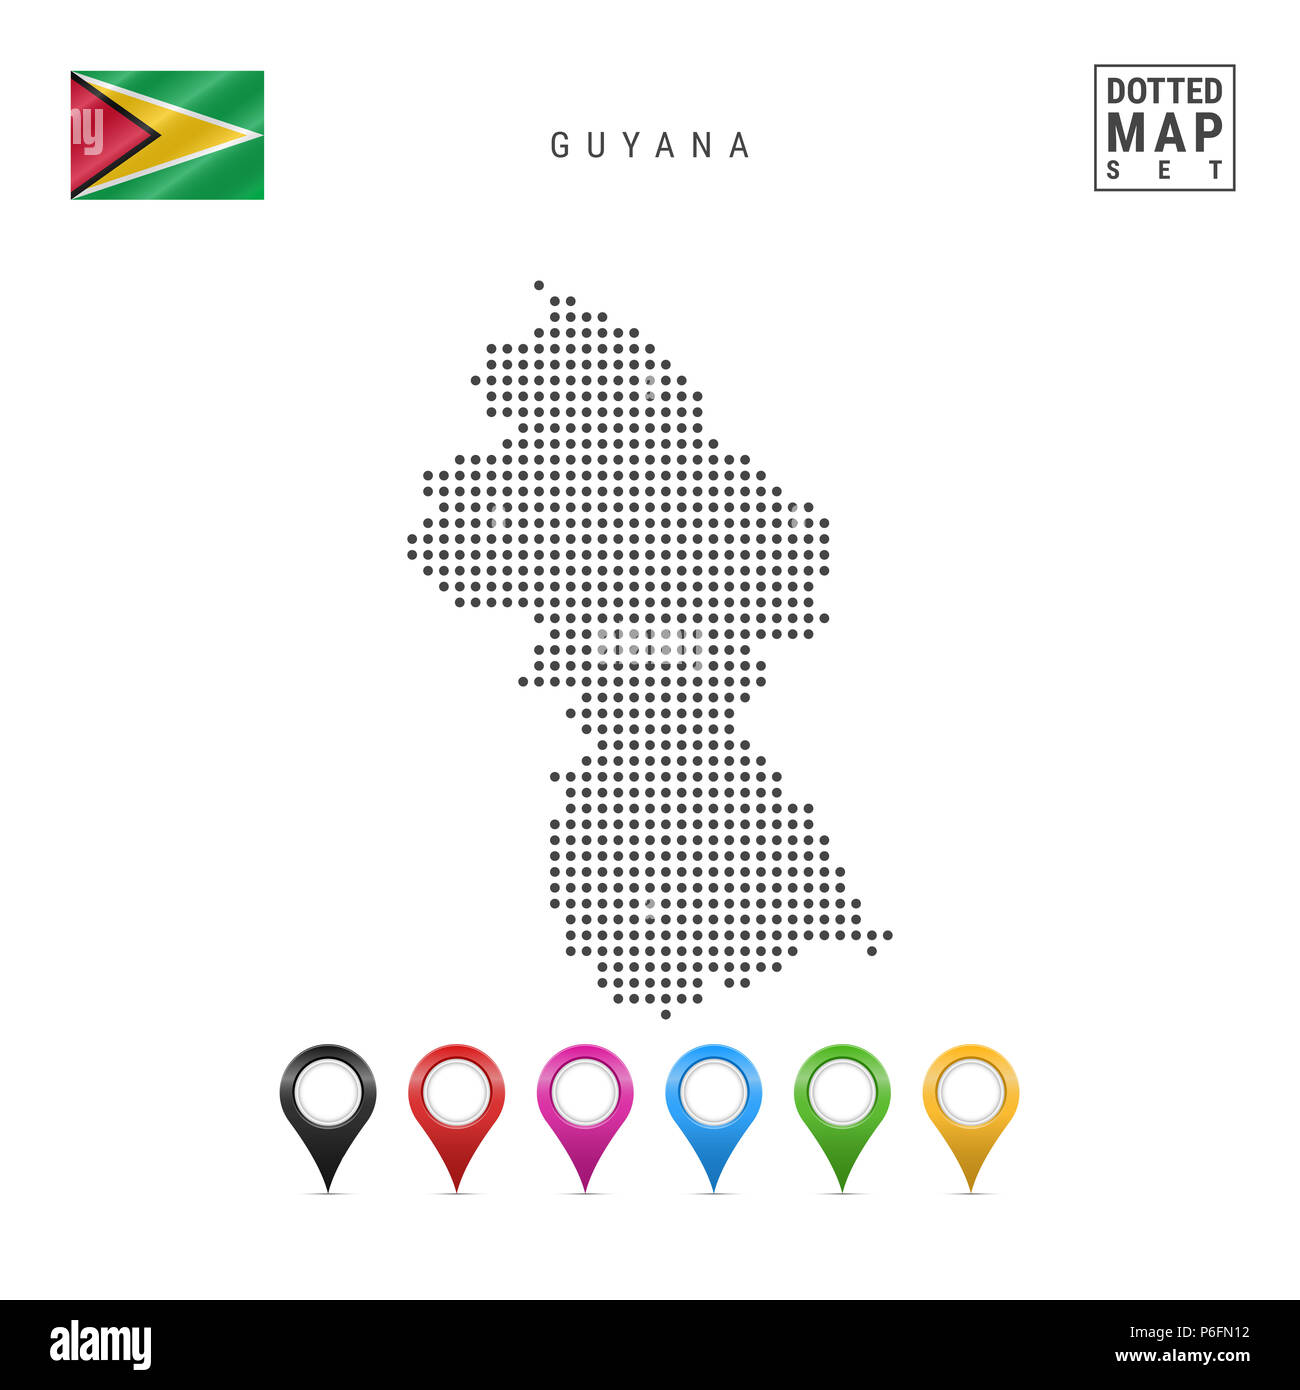 Carte de Guyane en pointillés. Silhouette simple du Guyana. Le drapeau national du Guyana. Ensemble de marqueurs de la carte multicolore. Illustration isolé sur blanc Zone Banque D'Images